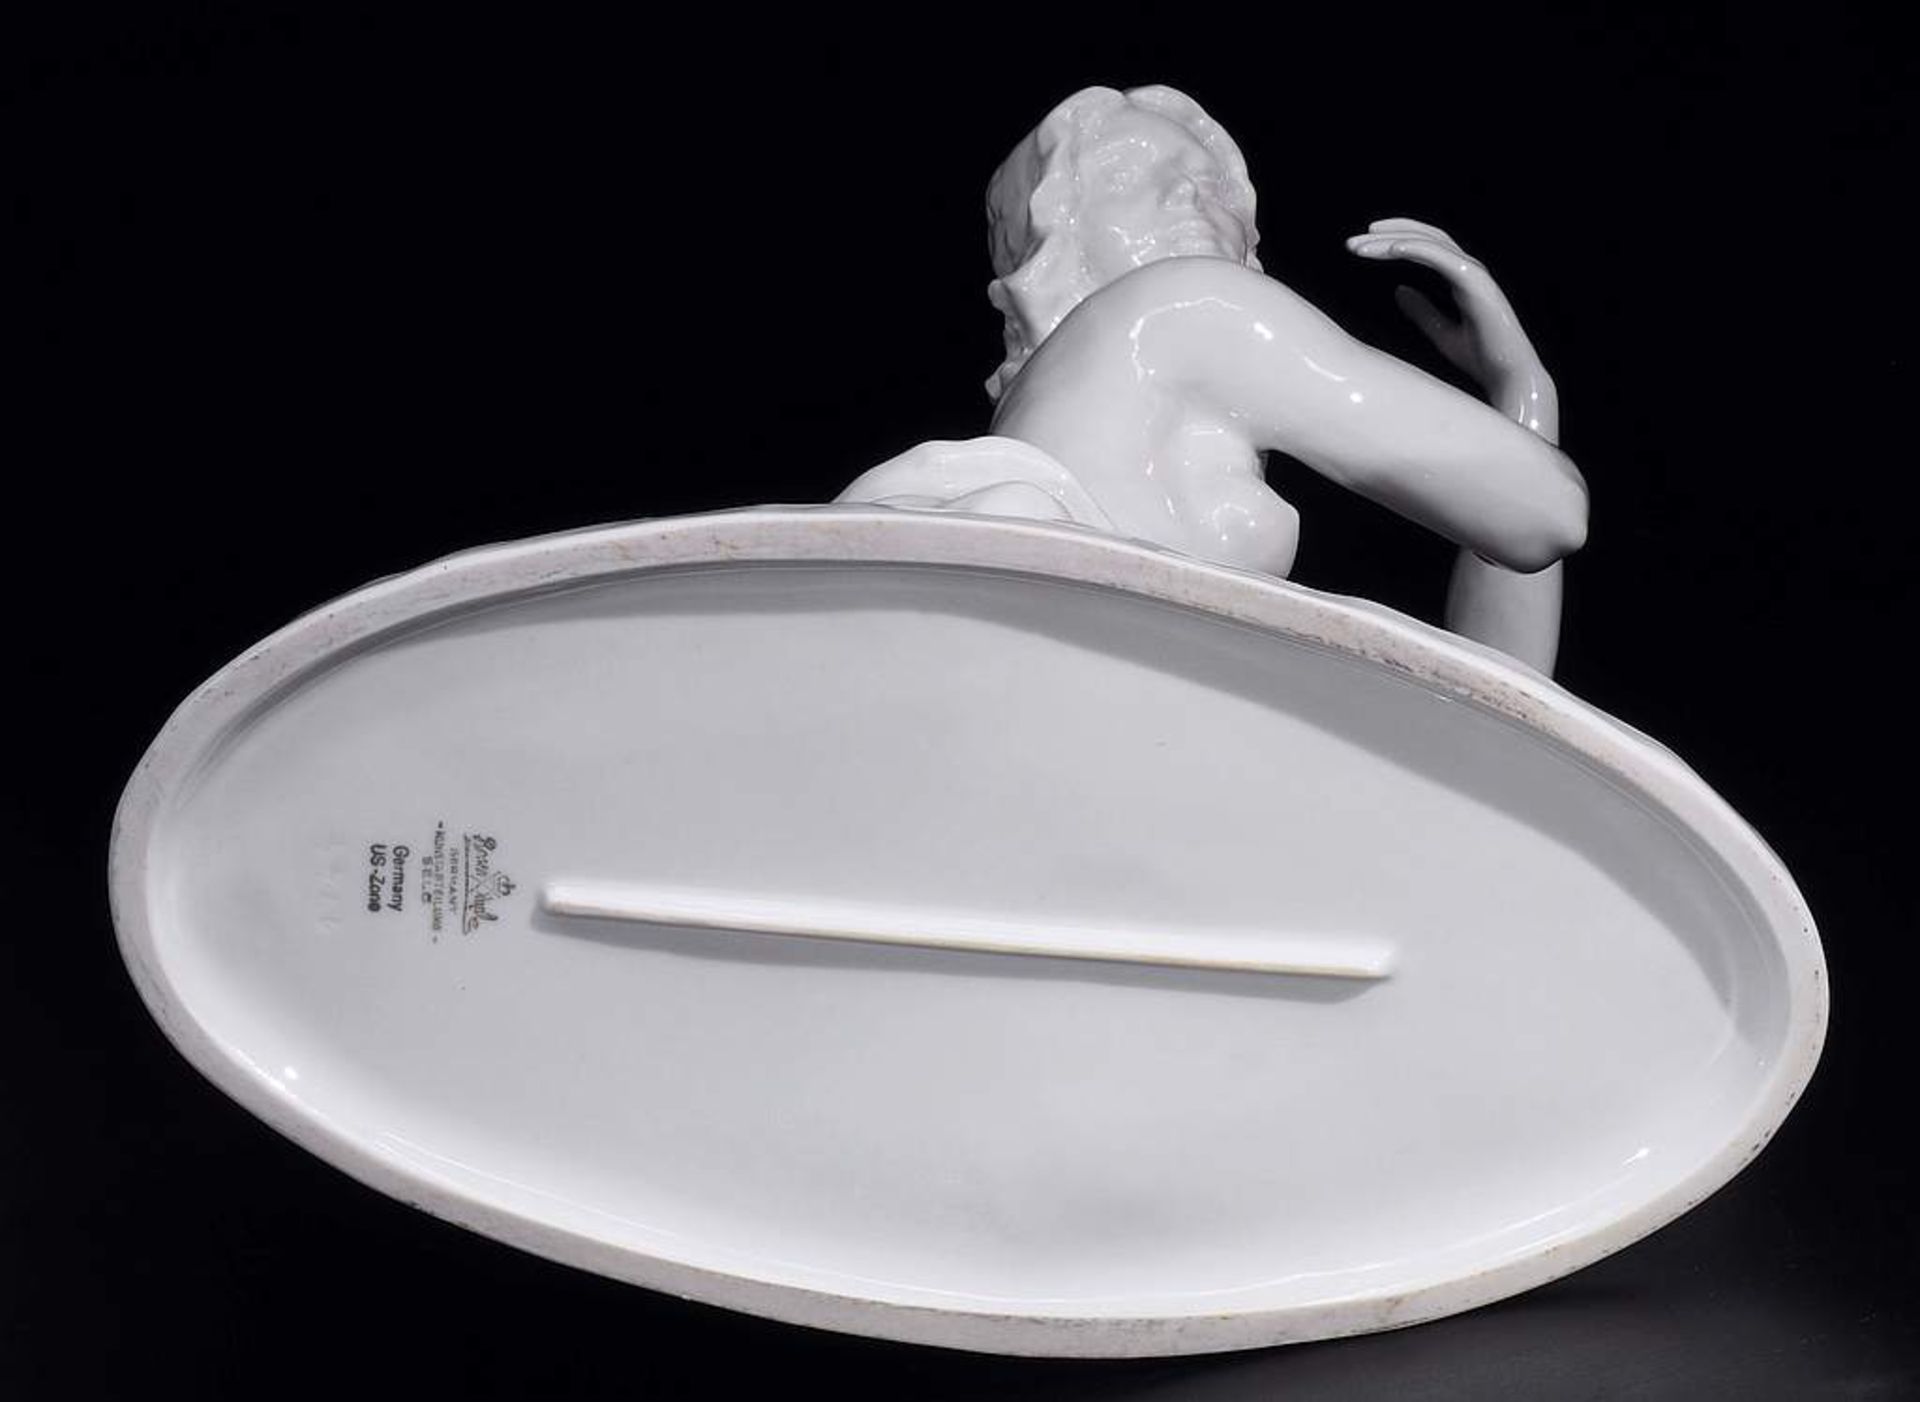 Seltene ROSENTHAL Figurine "LARGO", Ilse Meutner, rechts knieend, auf Ovalsockel. Seltene - Bild 7 aus 9